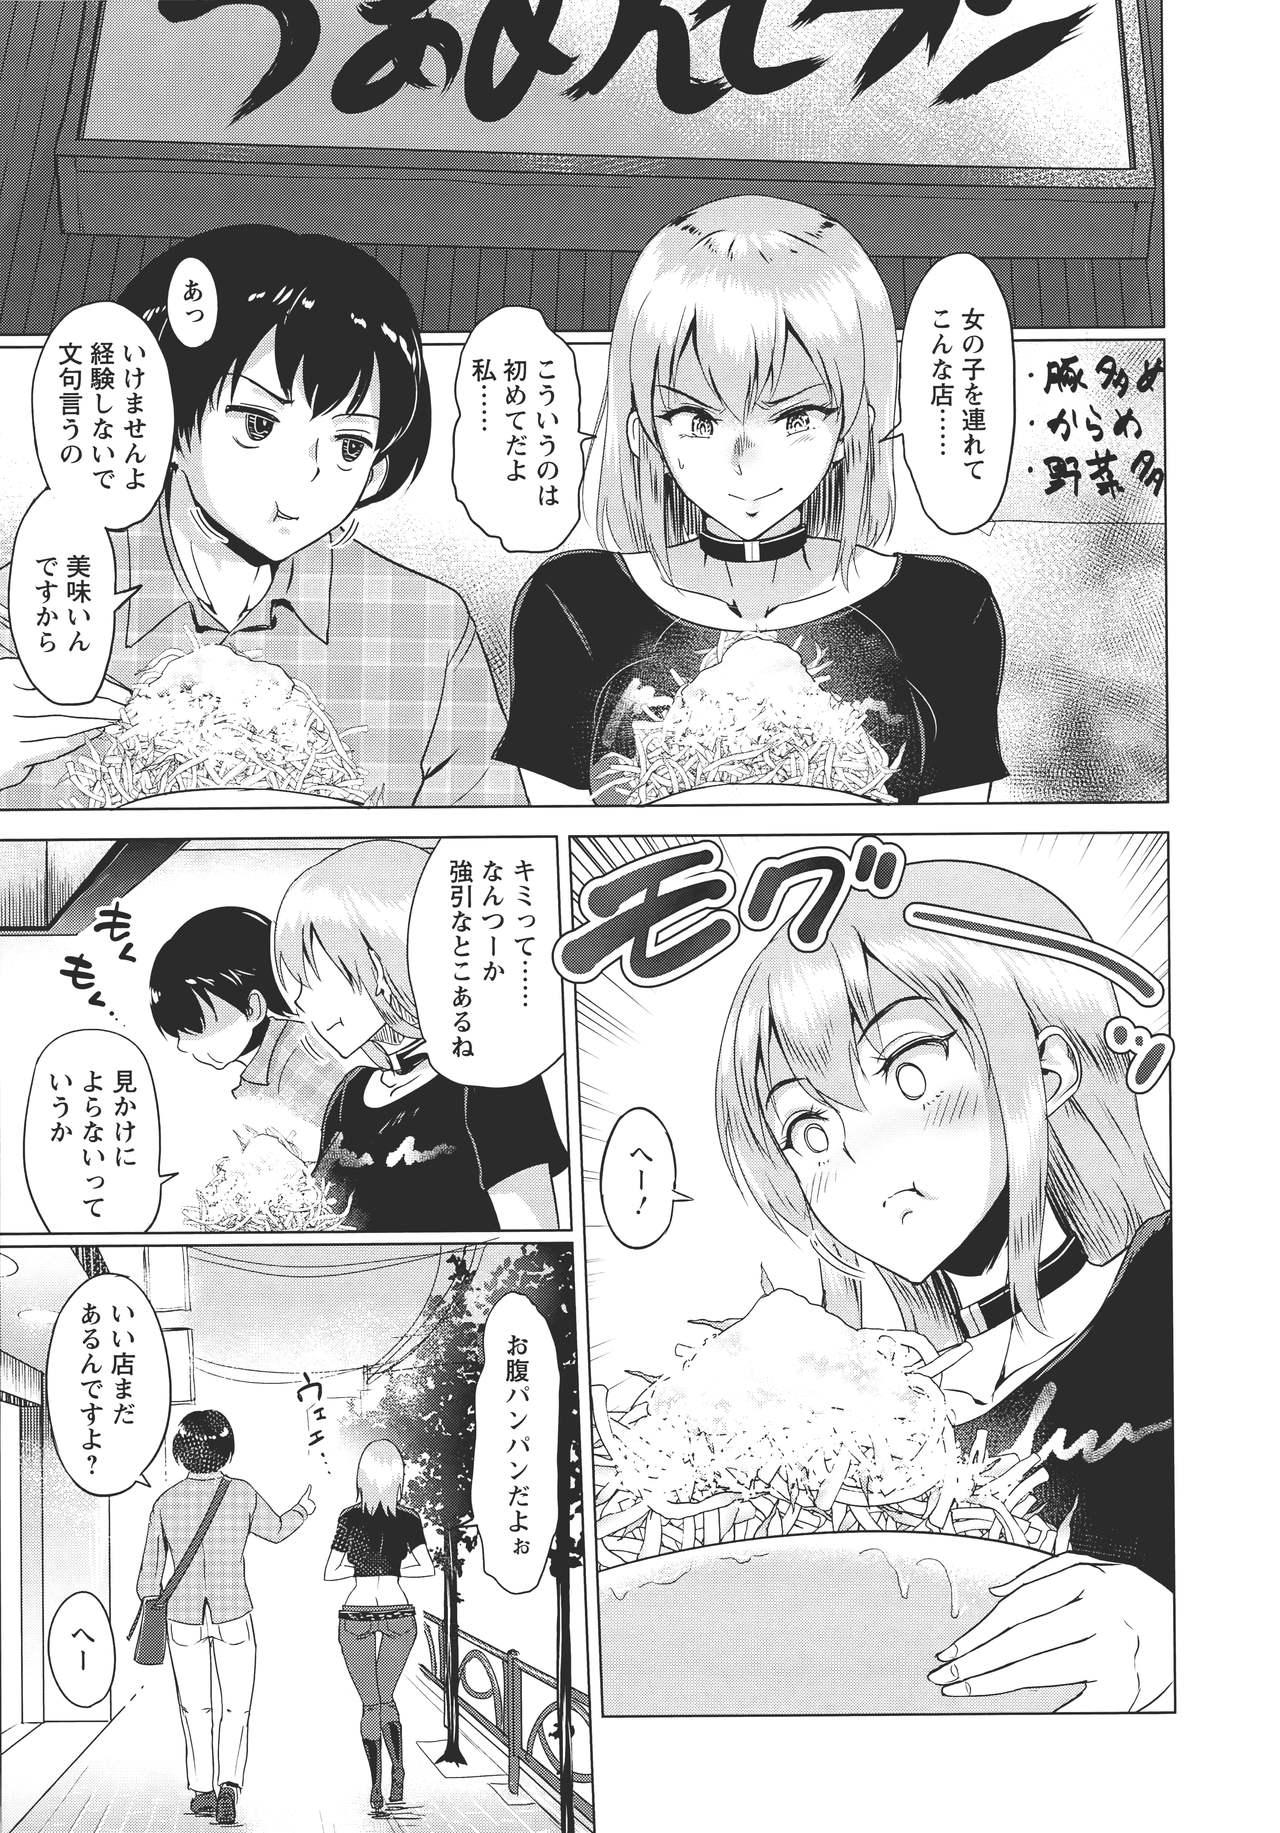 Kimi o Sasou Uzuki Ana Page 167 Of 216 hentai haven, Kimi o Sasou...